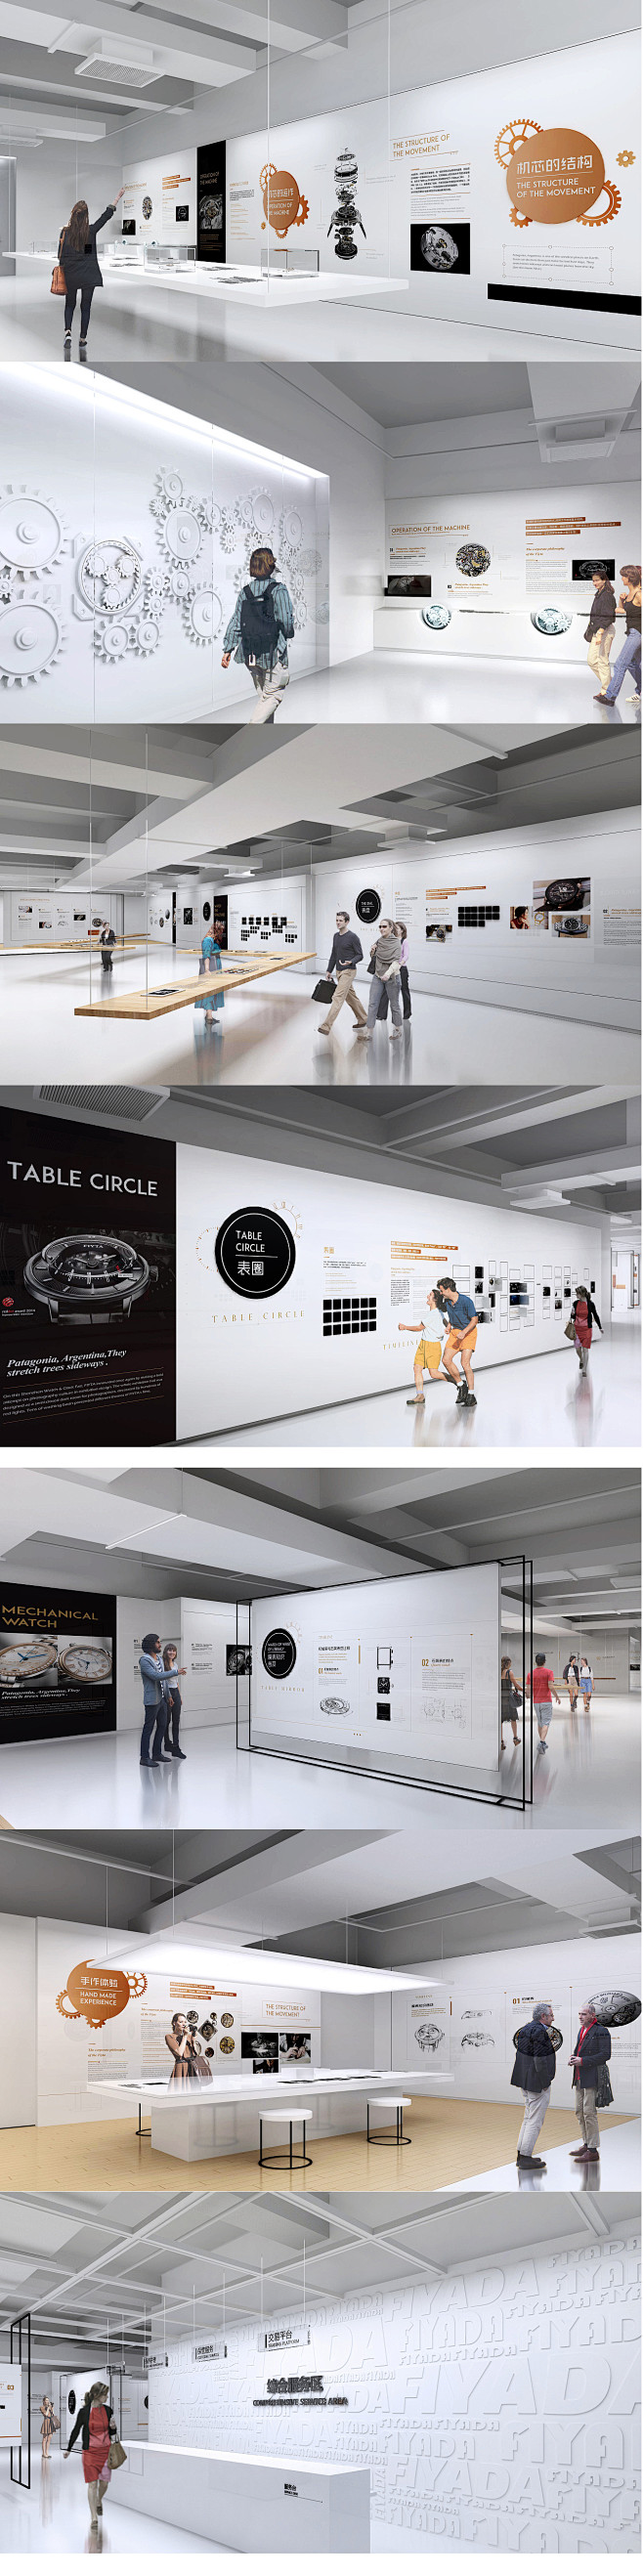 手表机芯展厅-空间设计1